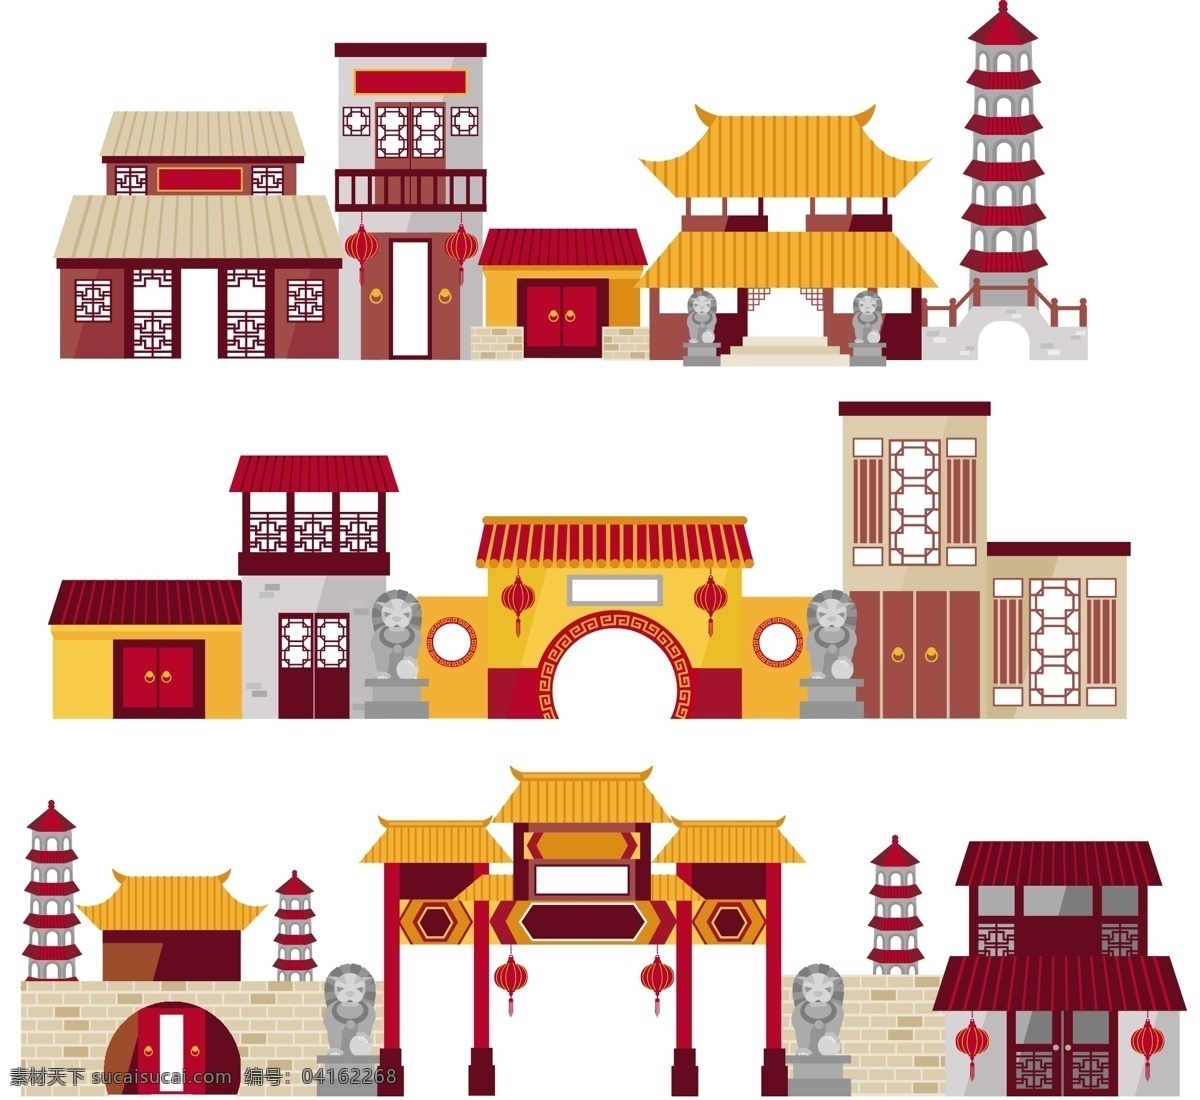 中国 建筑 矢量图 复古 中国古代建筑 多款可爱 复古风格 中国古建筑 可爱复古风格 中国古建筑图 建筑矢量素材